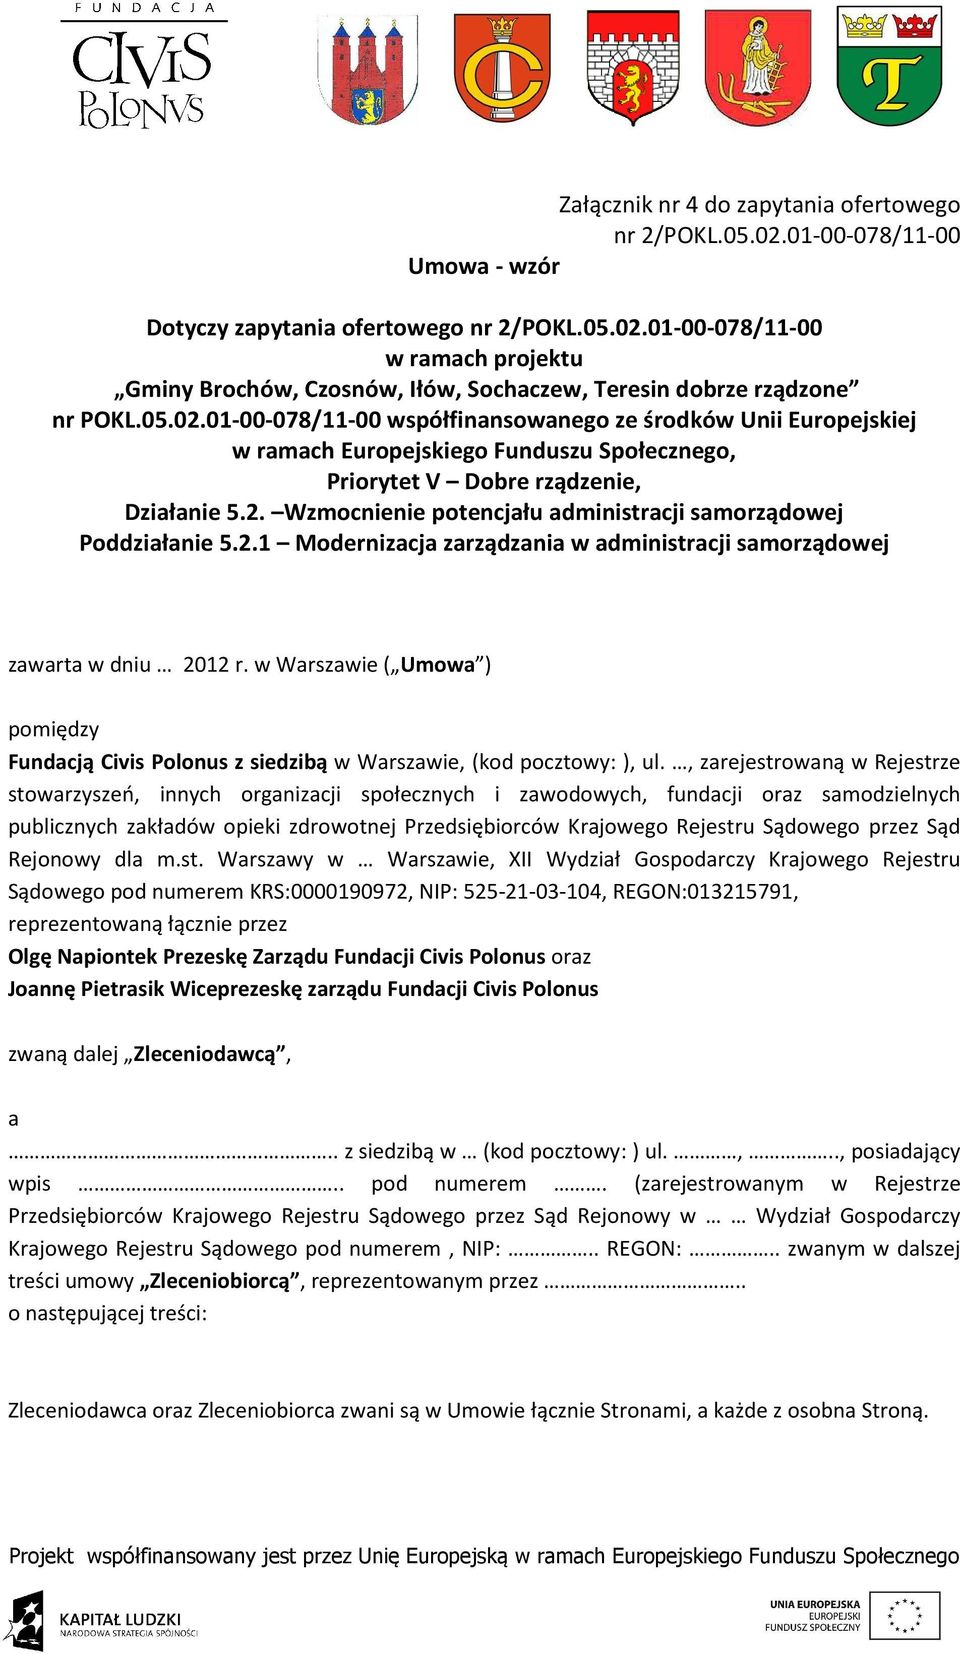 2.1 Modernizacja zarządzania w administracji samorządowej zawarta w dniu 2012 r. w Warszawie ( Umowa ) pomiędzy Fundacją Civis Polonus z siedzibą w Warszawie, (kod pocztowy: ), ul.